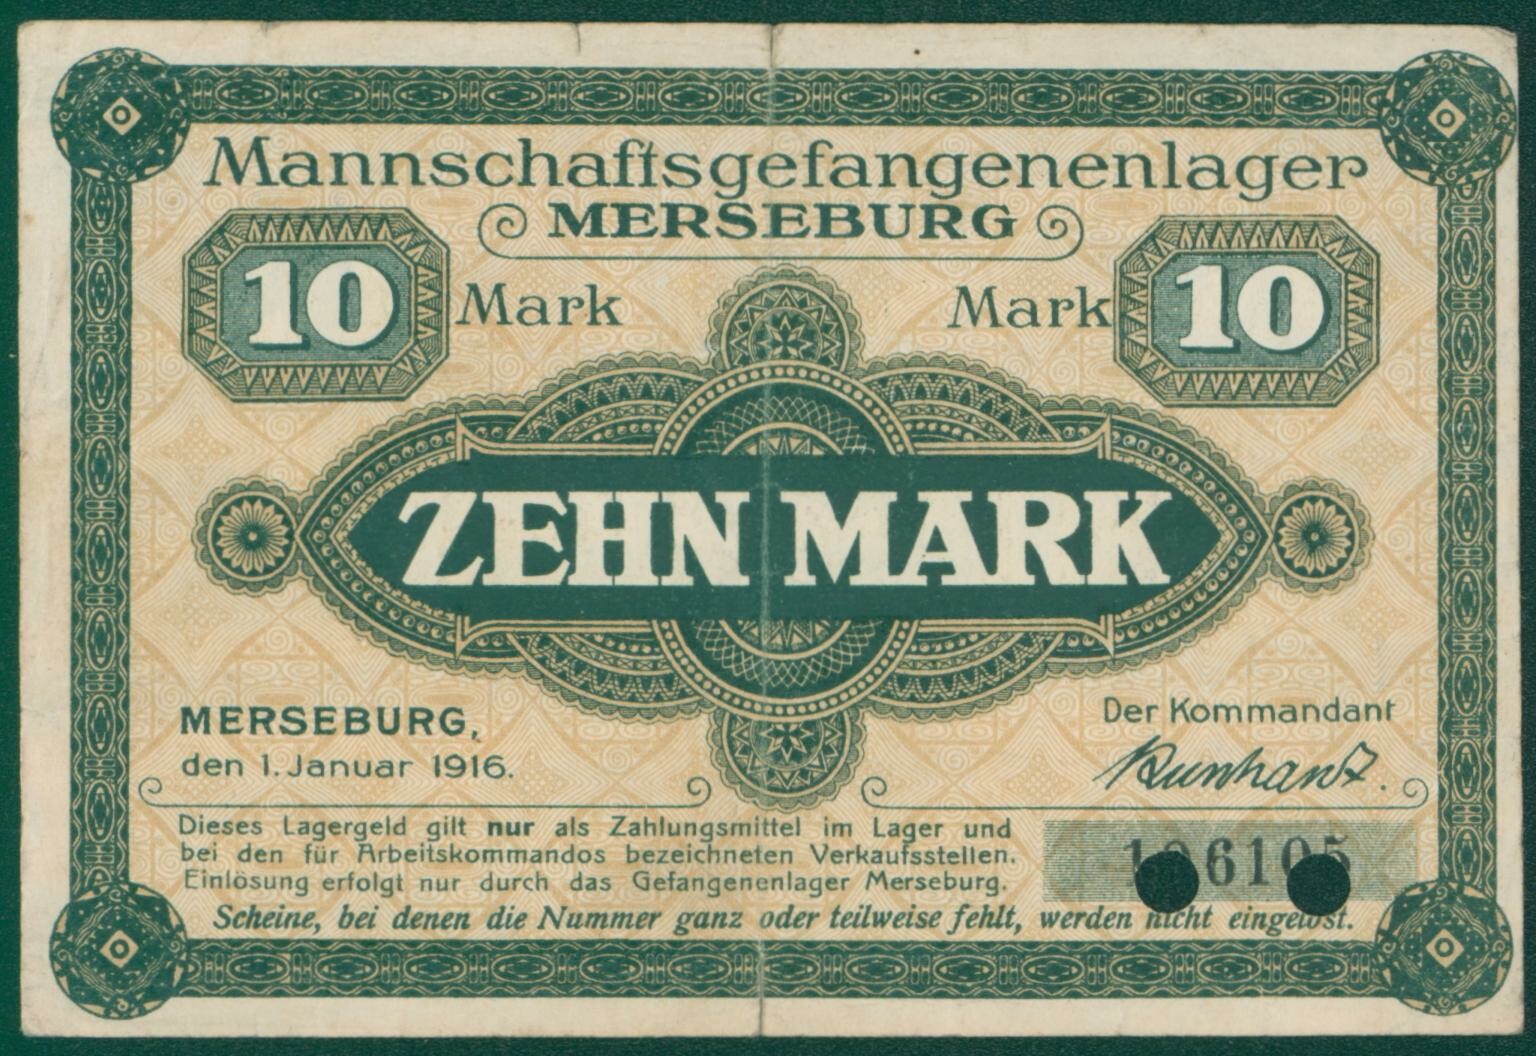 Lagergeld Merseburg "Zehn Mark", No. 196105 (Kulturhistorisches Museum Schloss Merseburg CC BY-NC-SA)